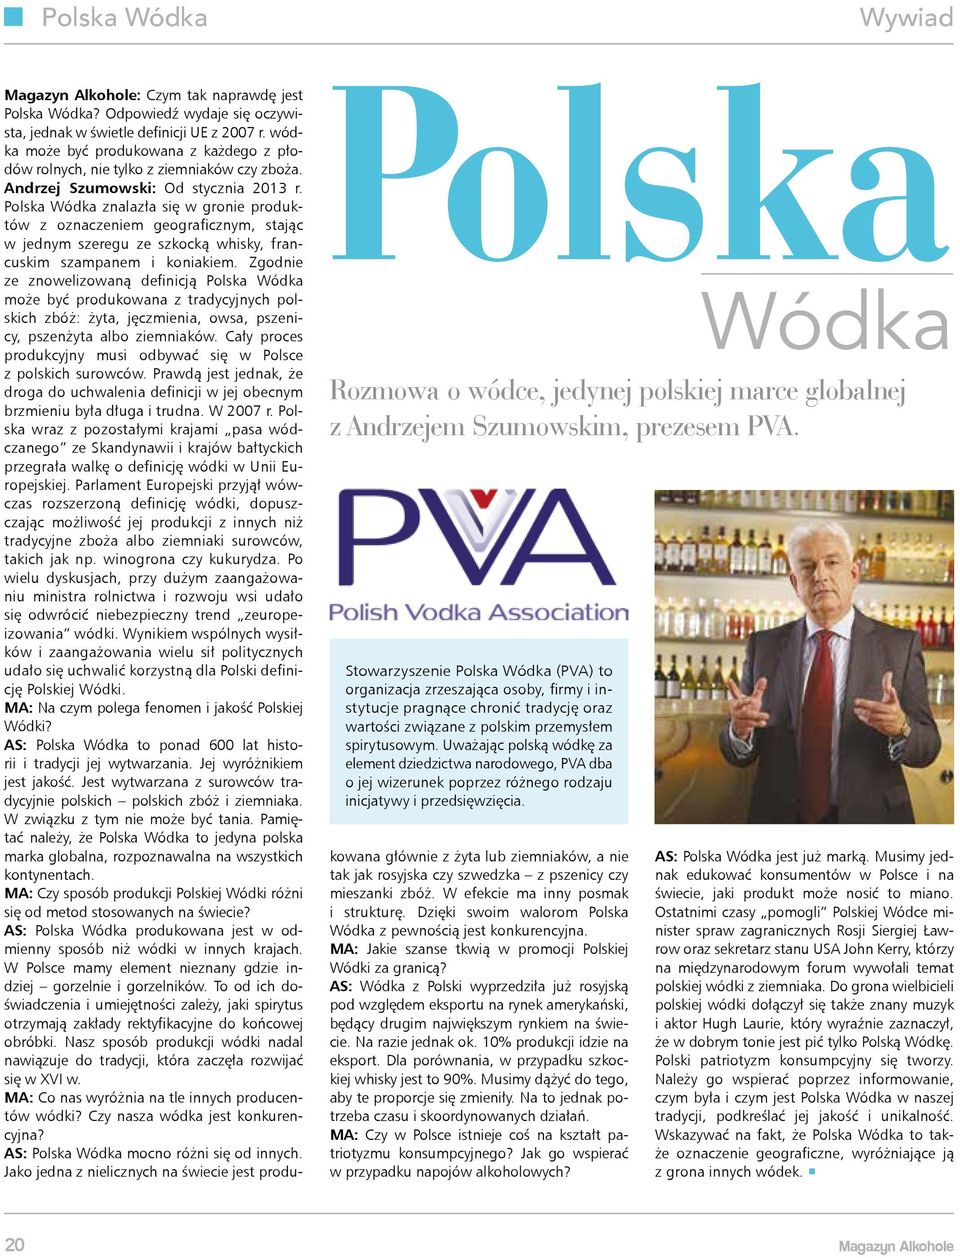 Uważając polską wódkę za element dziedzictwa narodowego, PVA dba o jej wizerunek poprzez różnego rodzaju inicjatywy i przedsięwzięcia. Magazyn Alkohole: Czym tak naprawdę jest Polska Wódka?